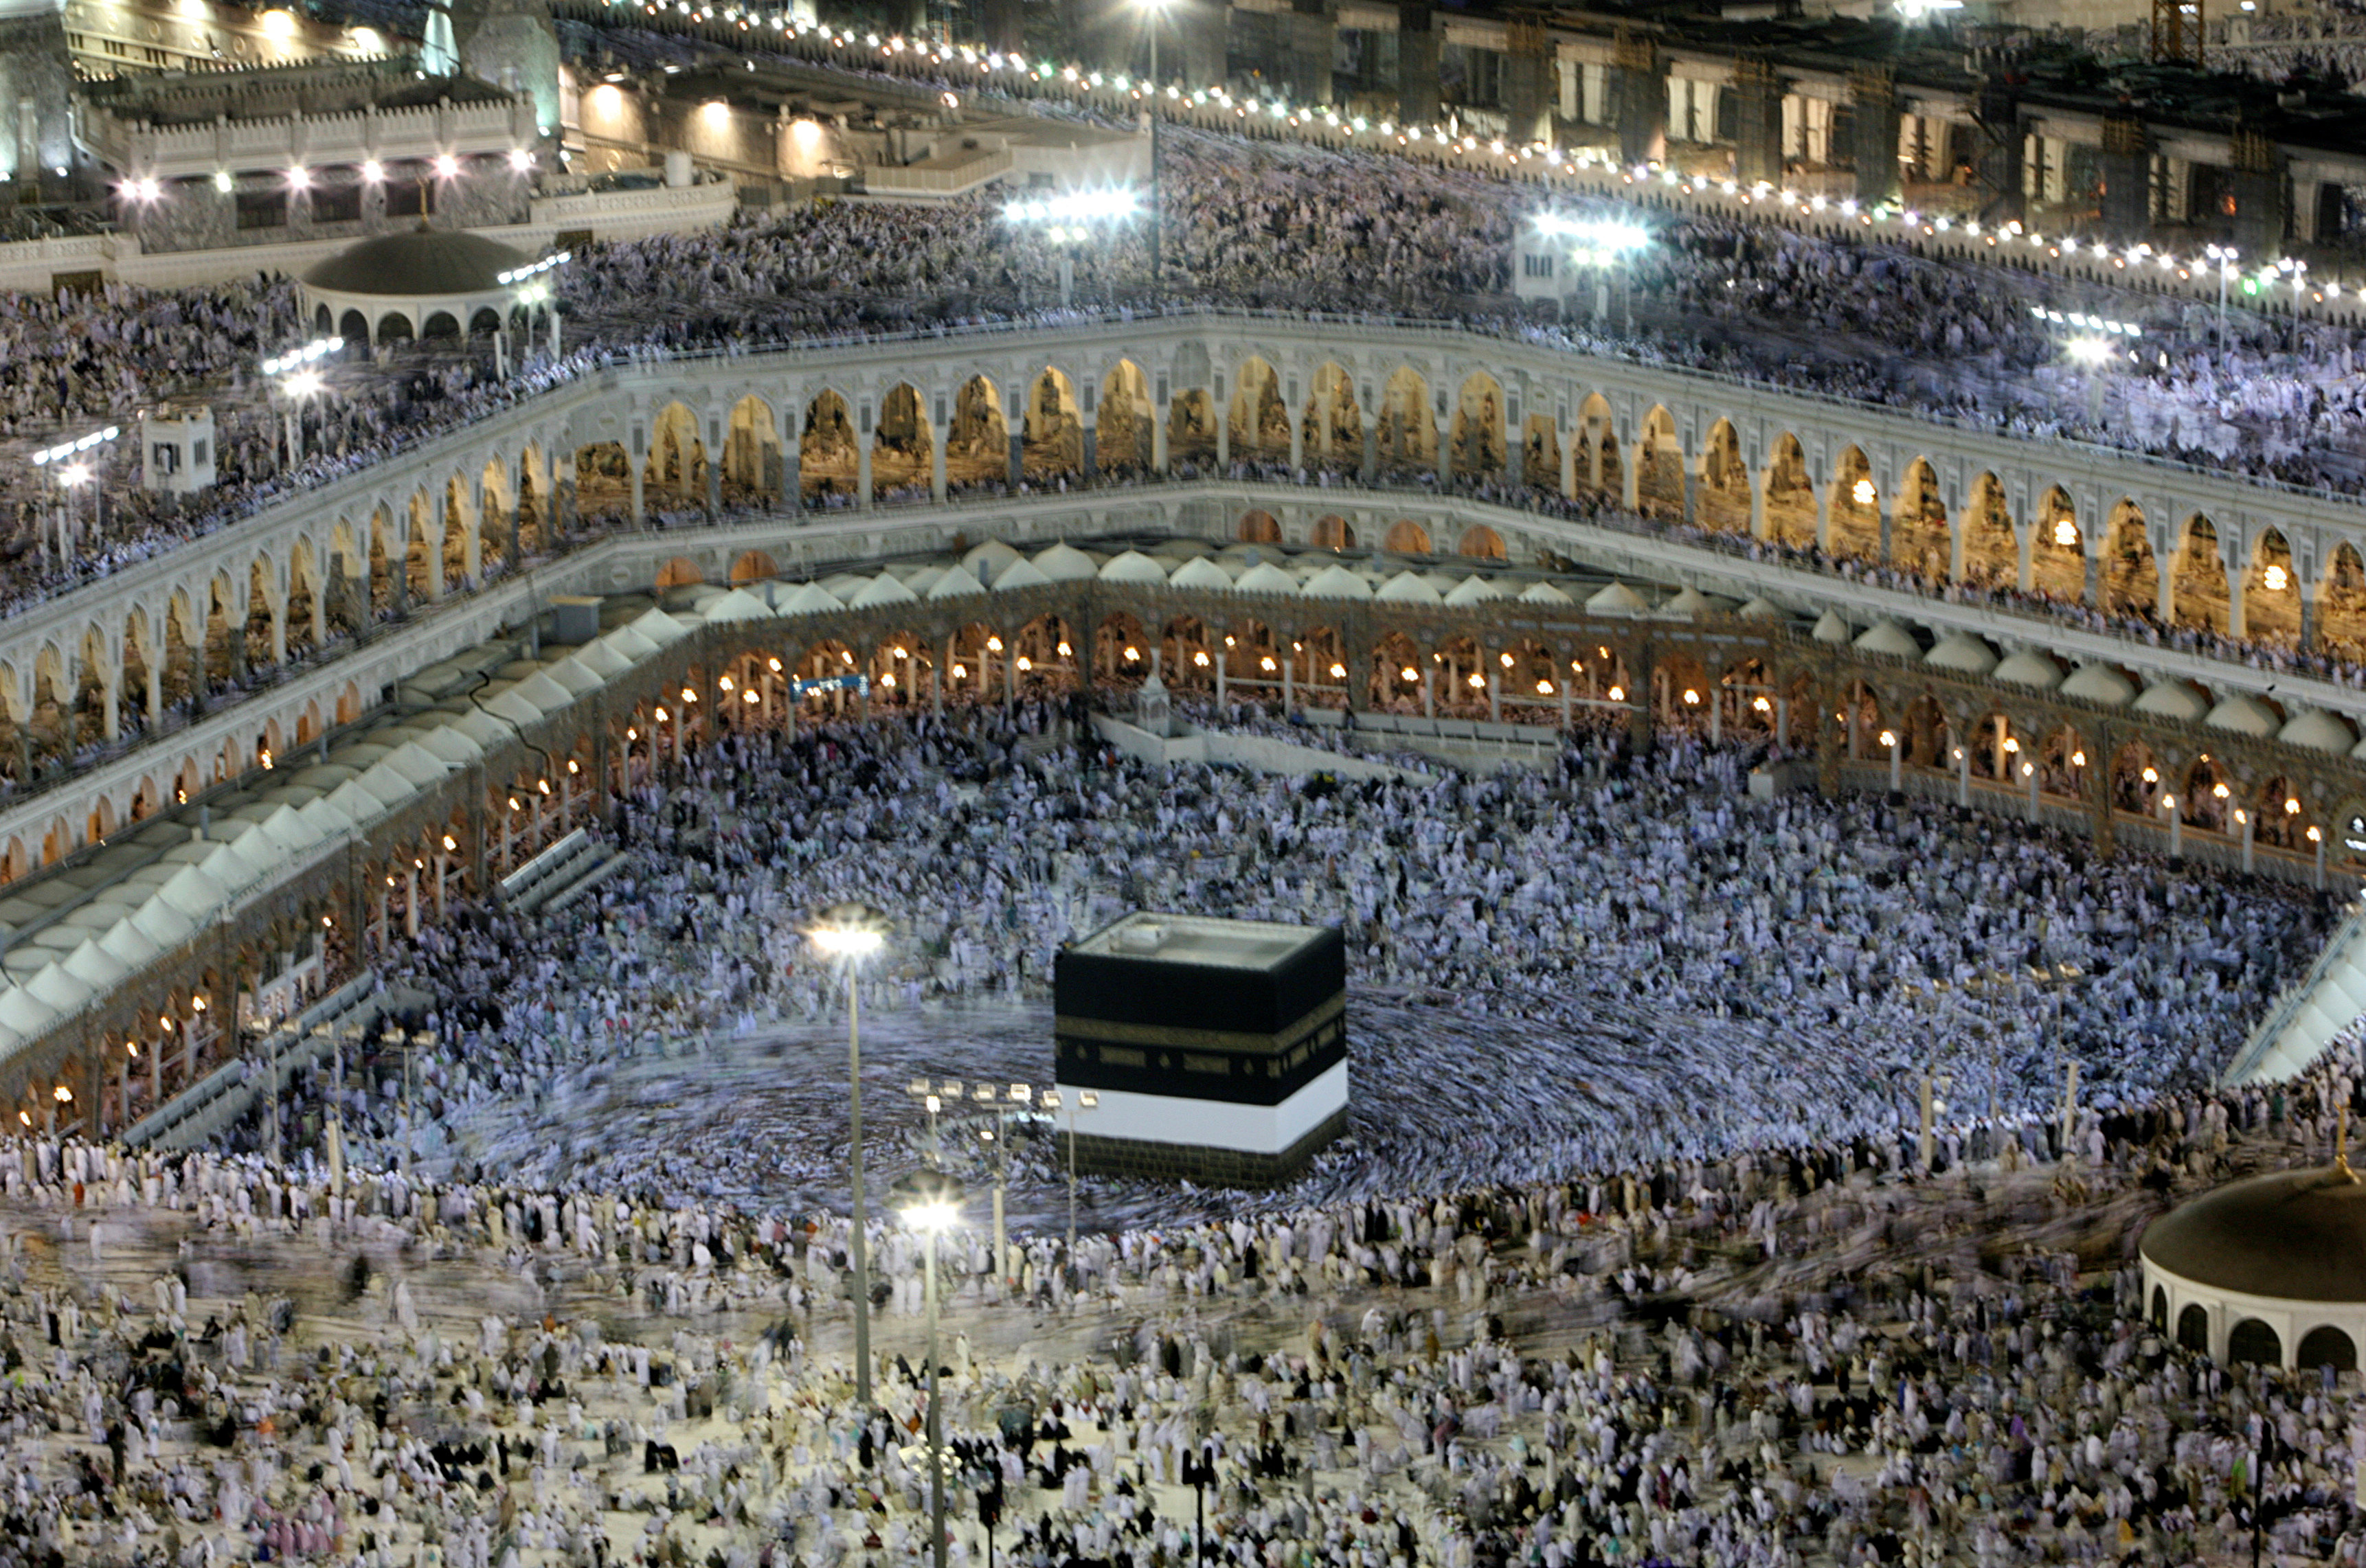 La peregrinación se realizará en la ciudad santa de La Meca desde finales de agosto hasta principios de septiembre.